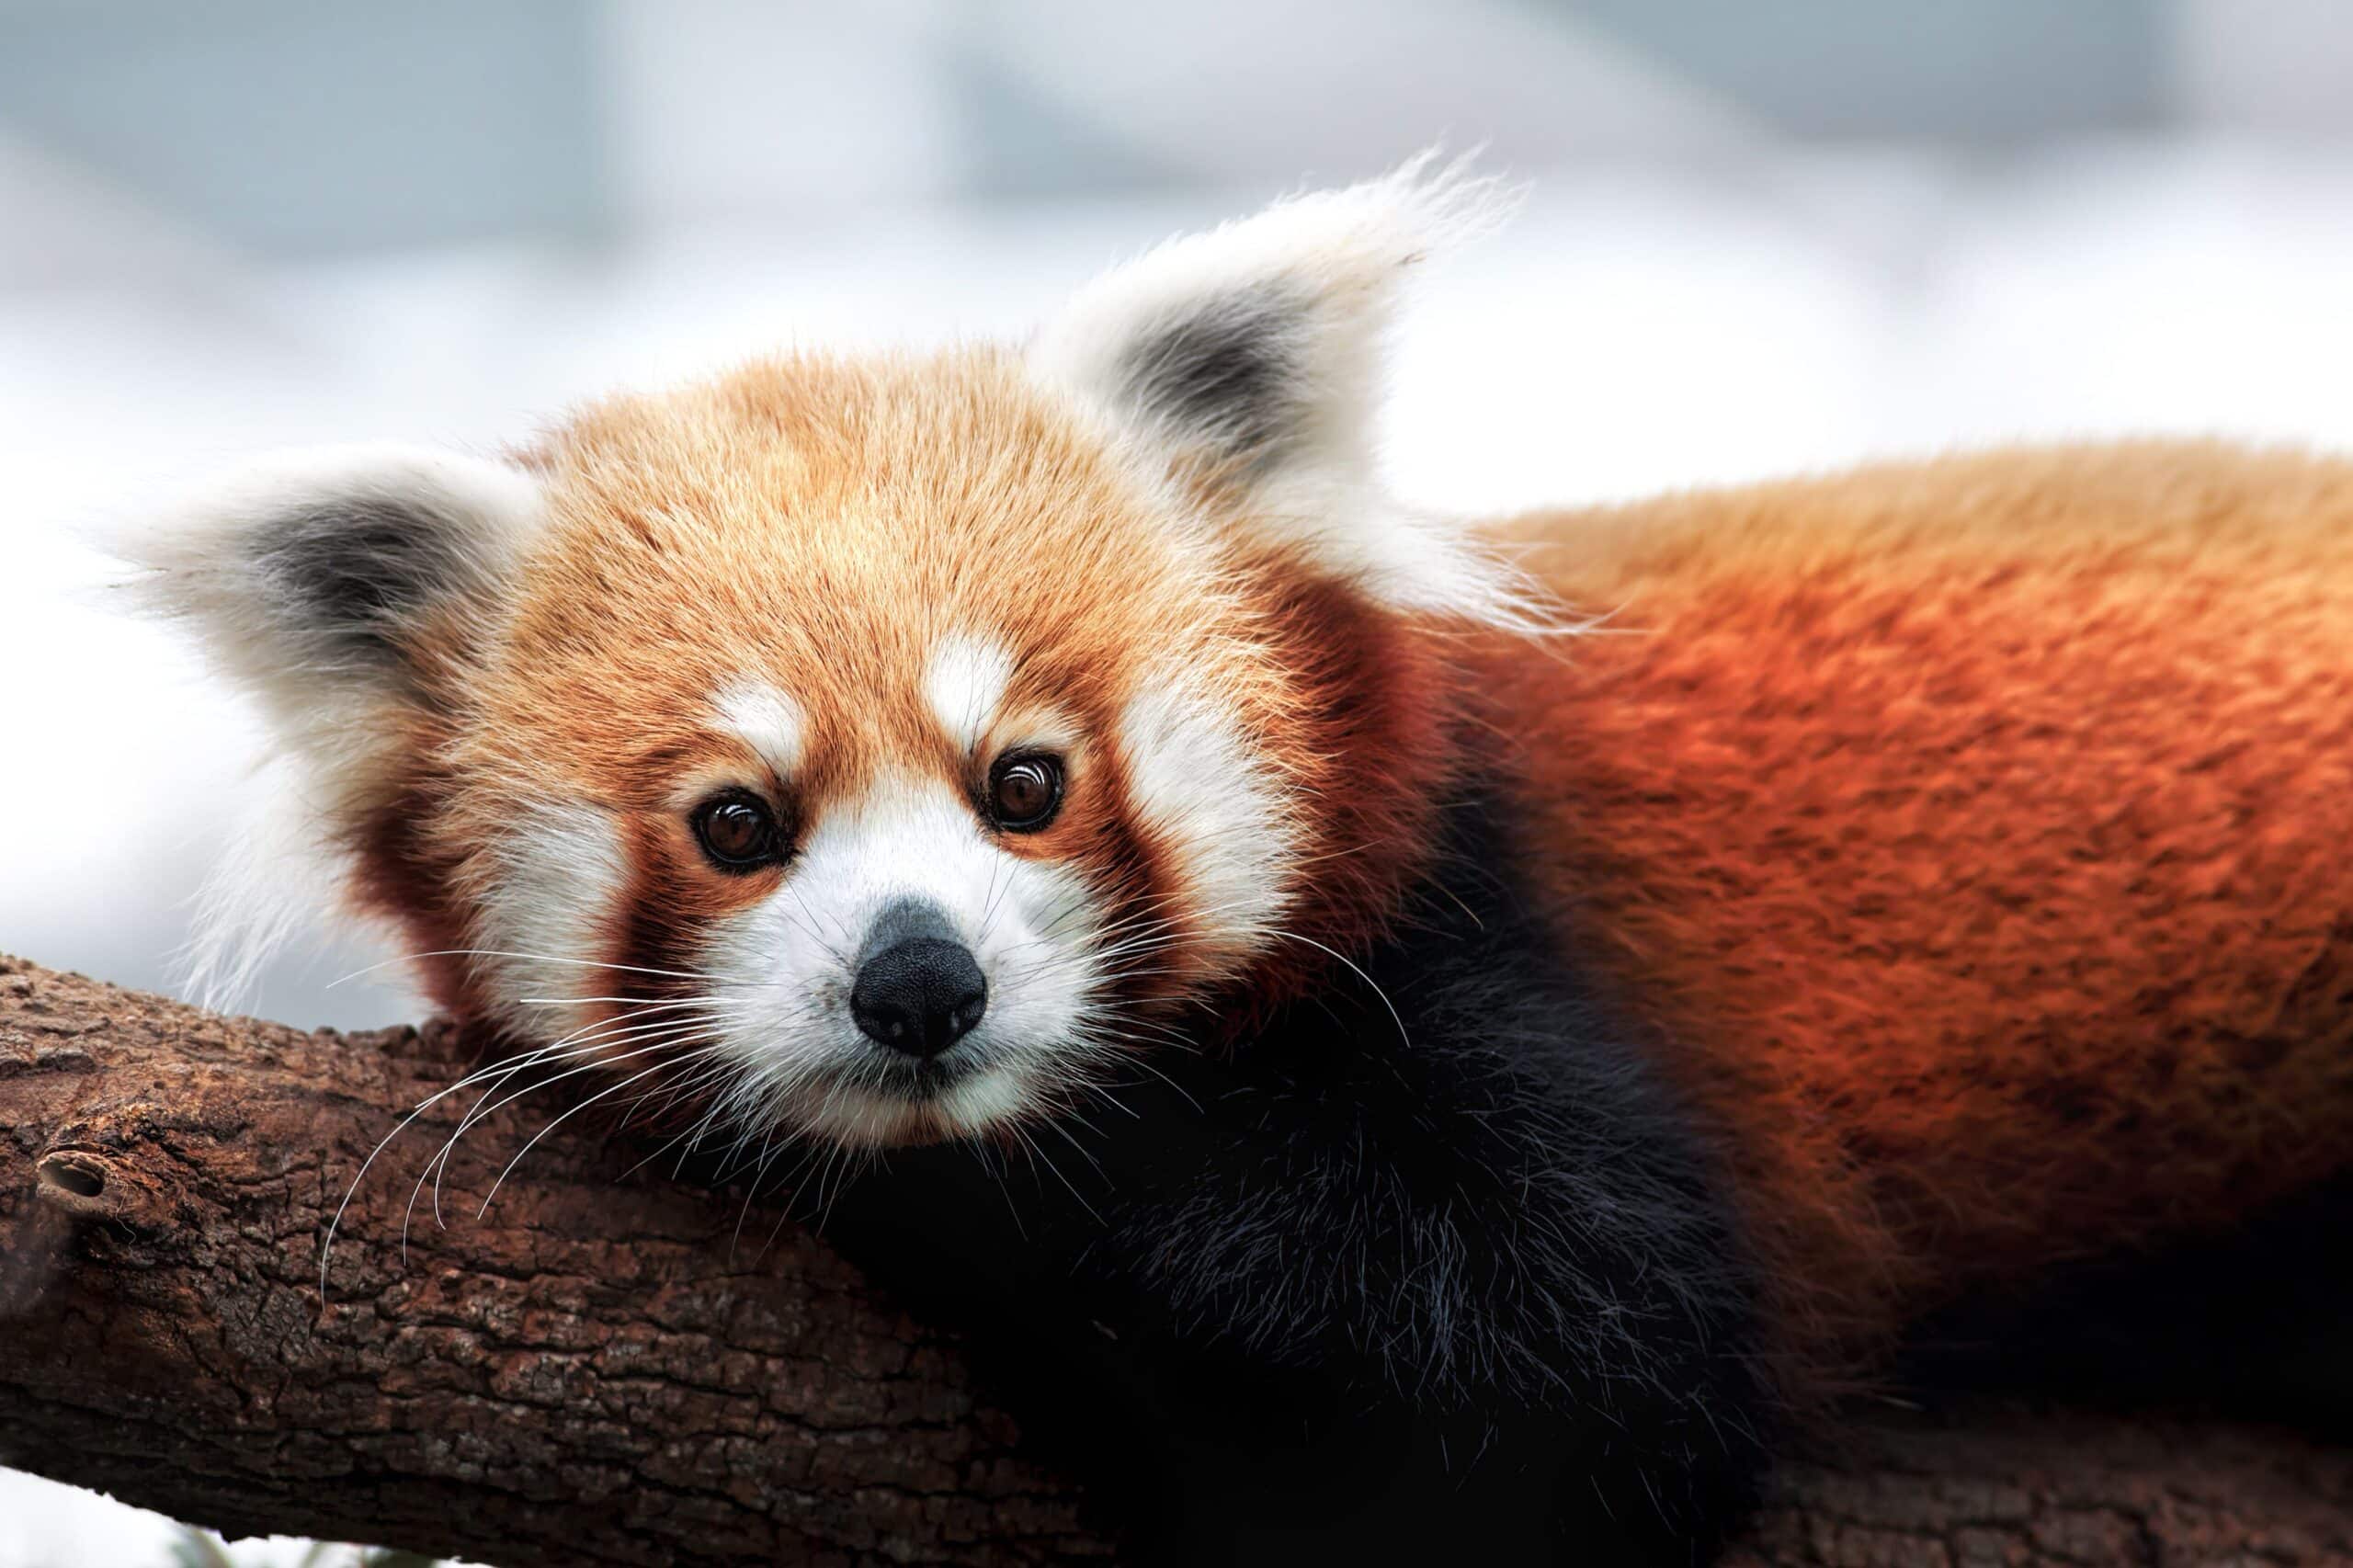 Los pandas rojos son en realidad dos especies distintas